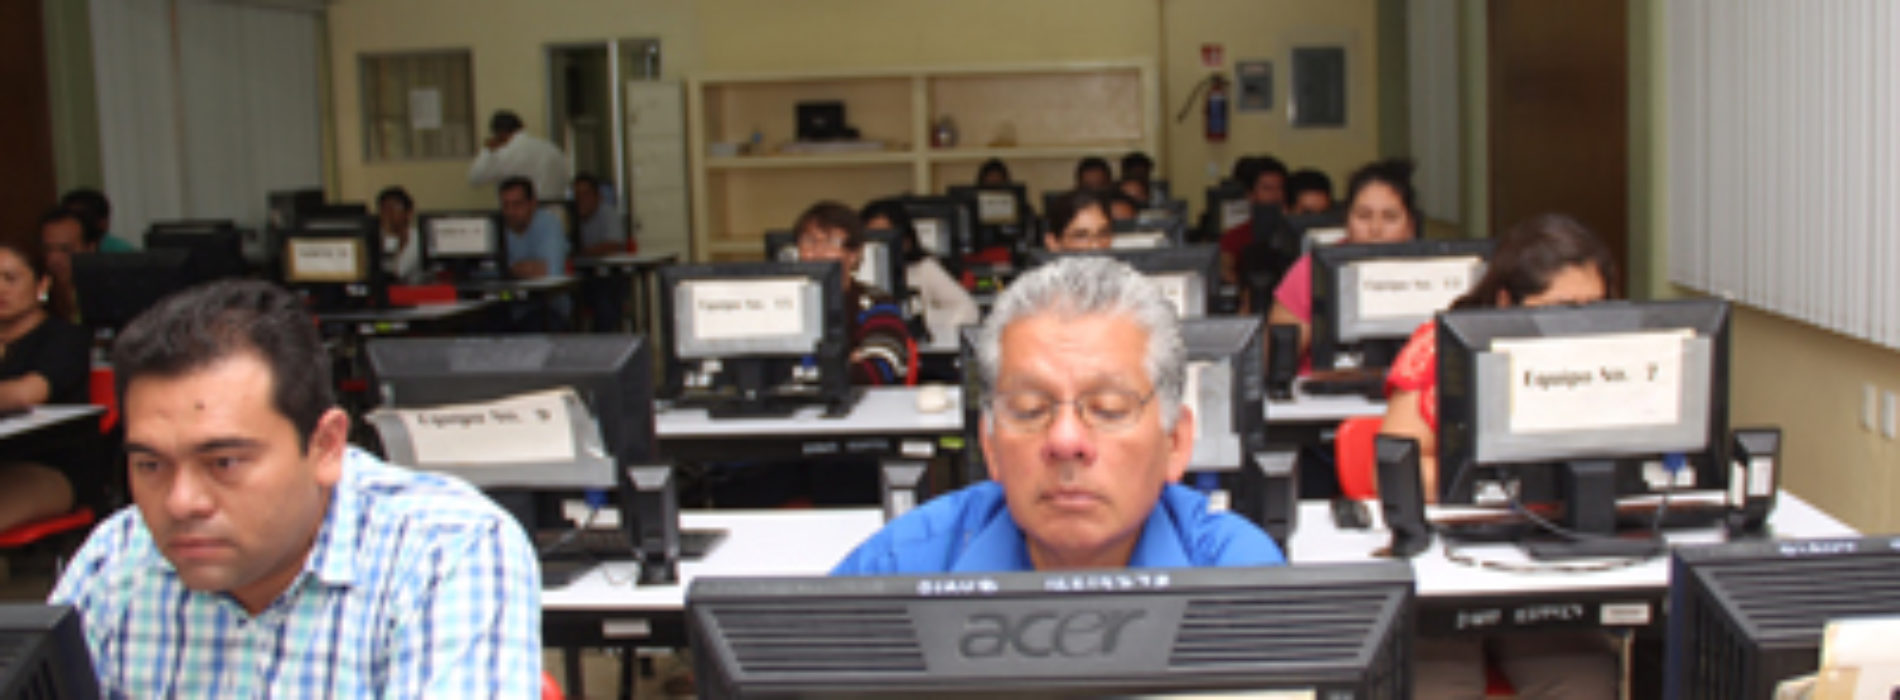 Realizan Evaluación de Promoción Educativa de Nivel Medio Superior en Oaxaca